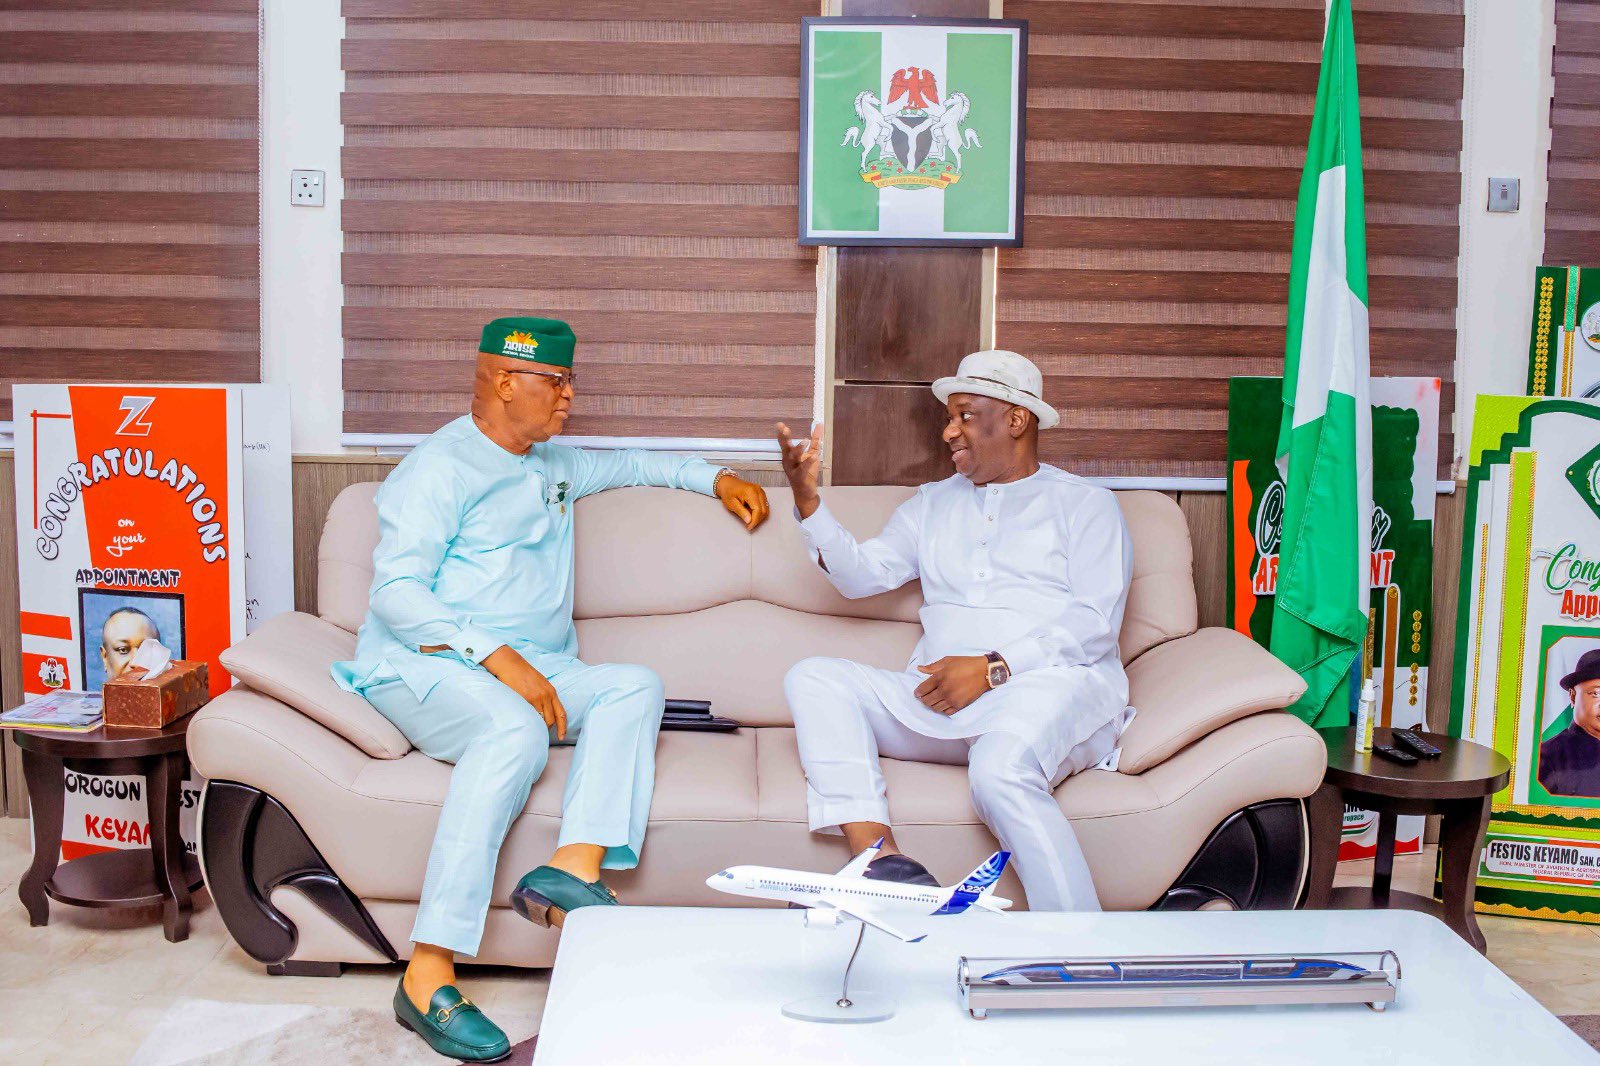 Keyamo Meets Akwa Ibom Governor In Abuja [Photos]